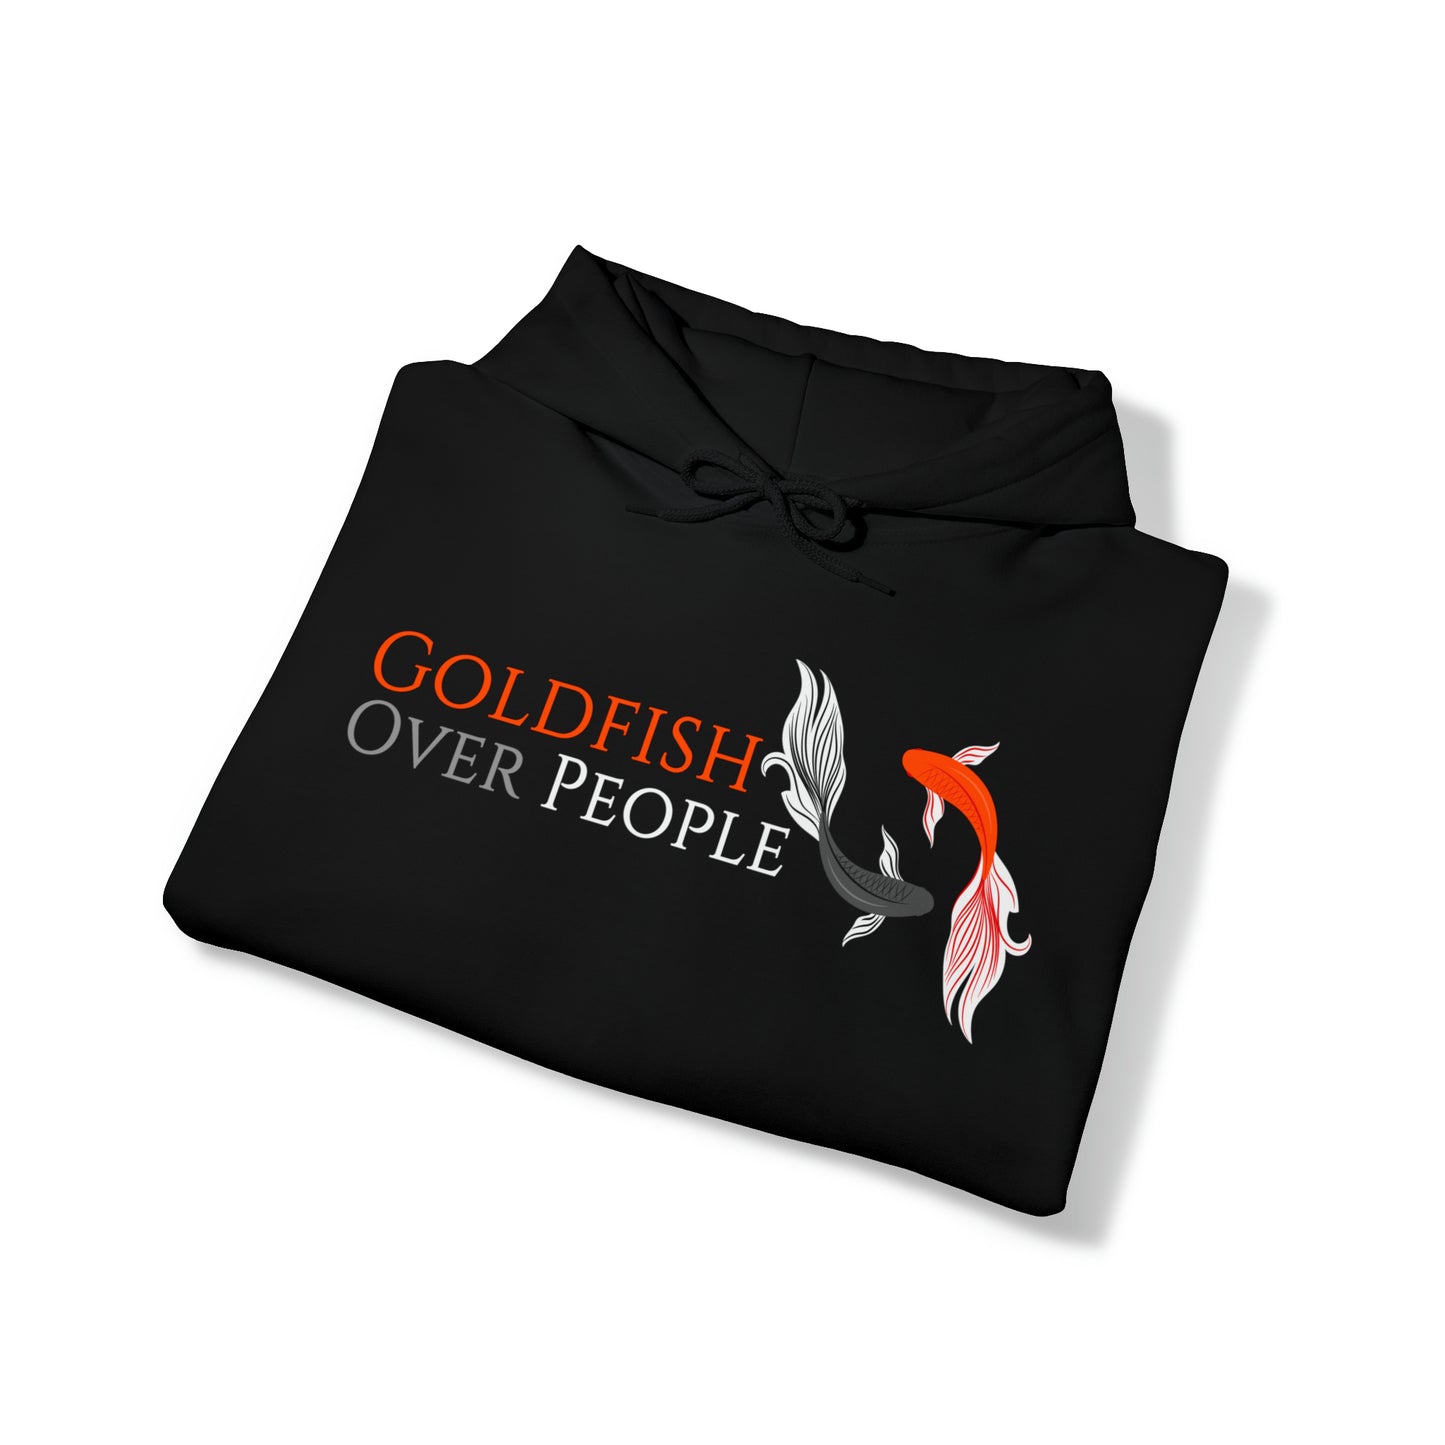 Goldfish / People Black Hoodie